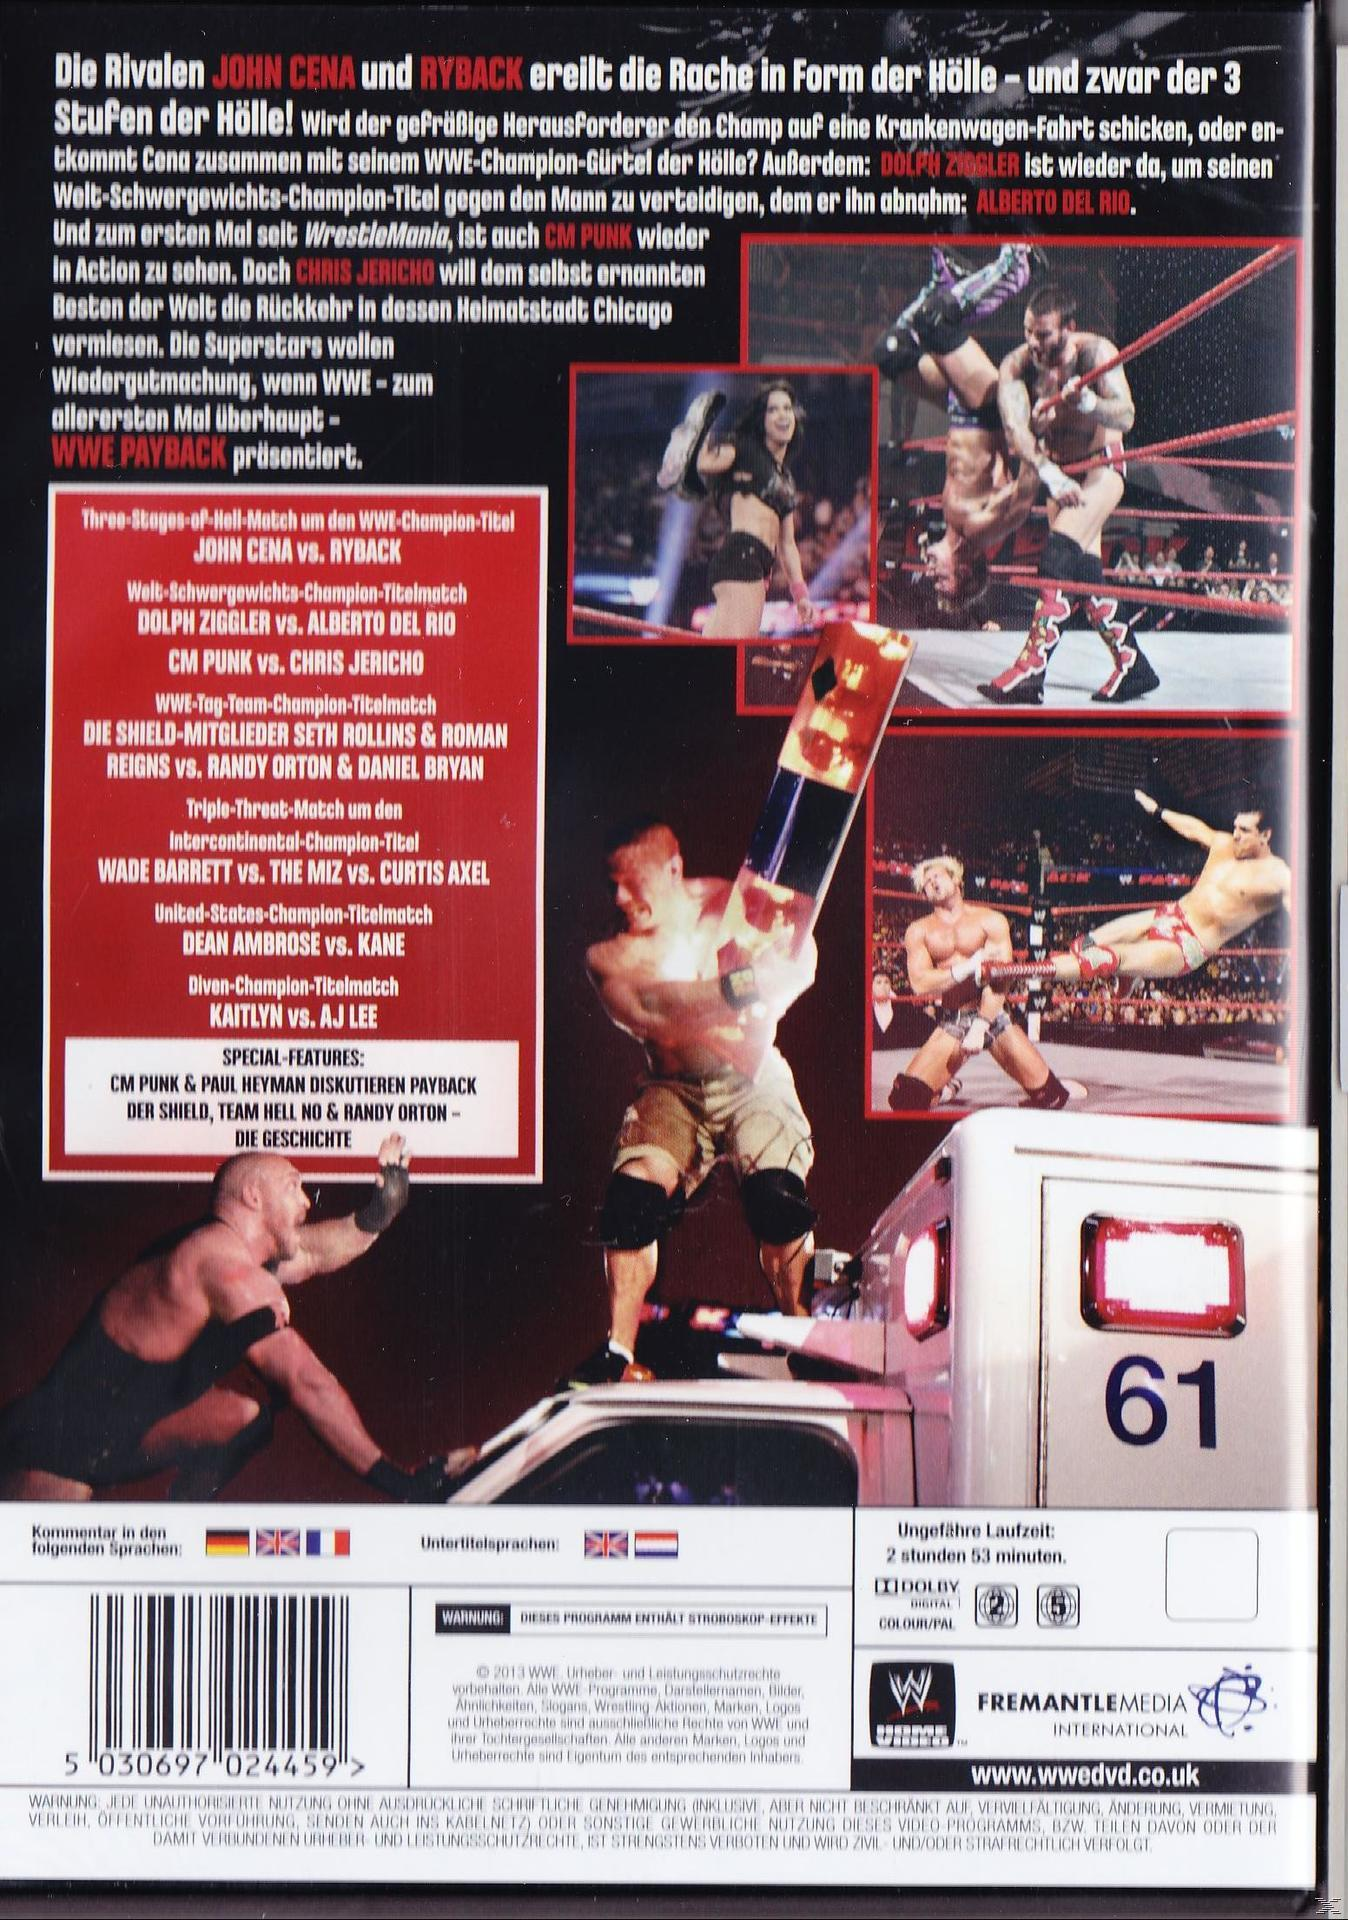 WWE - Payback 2013 DVD